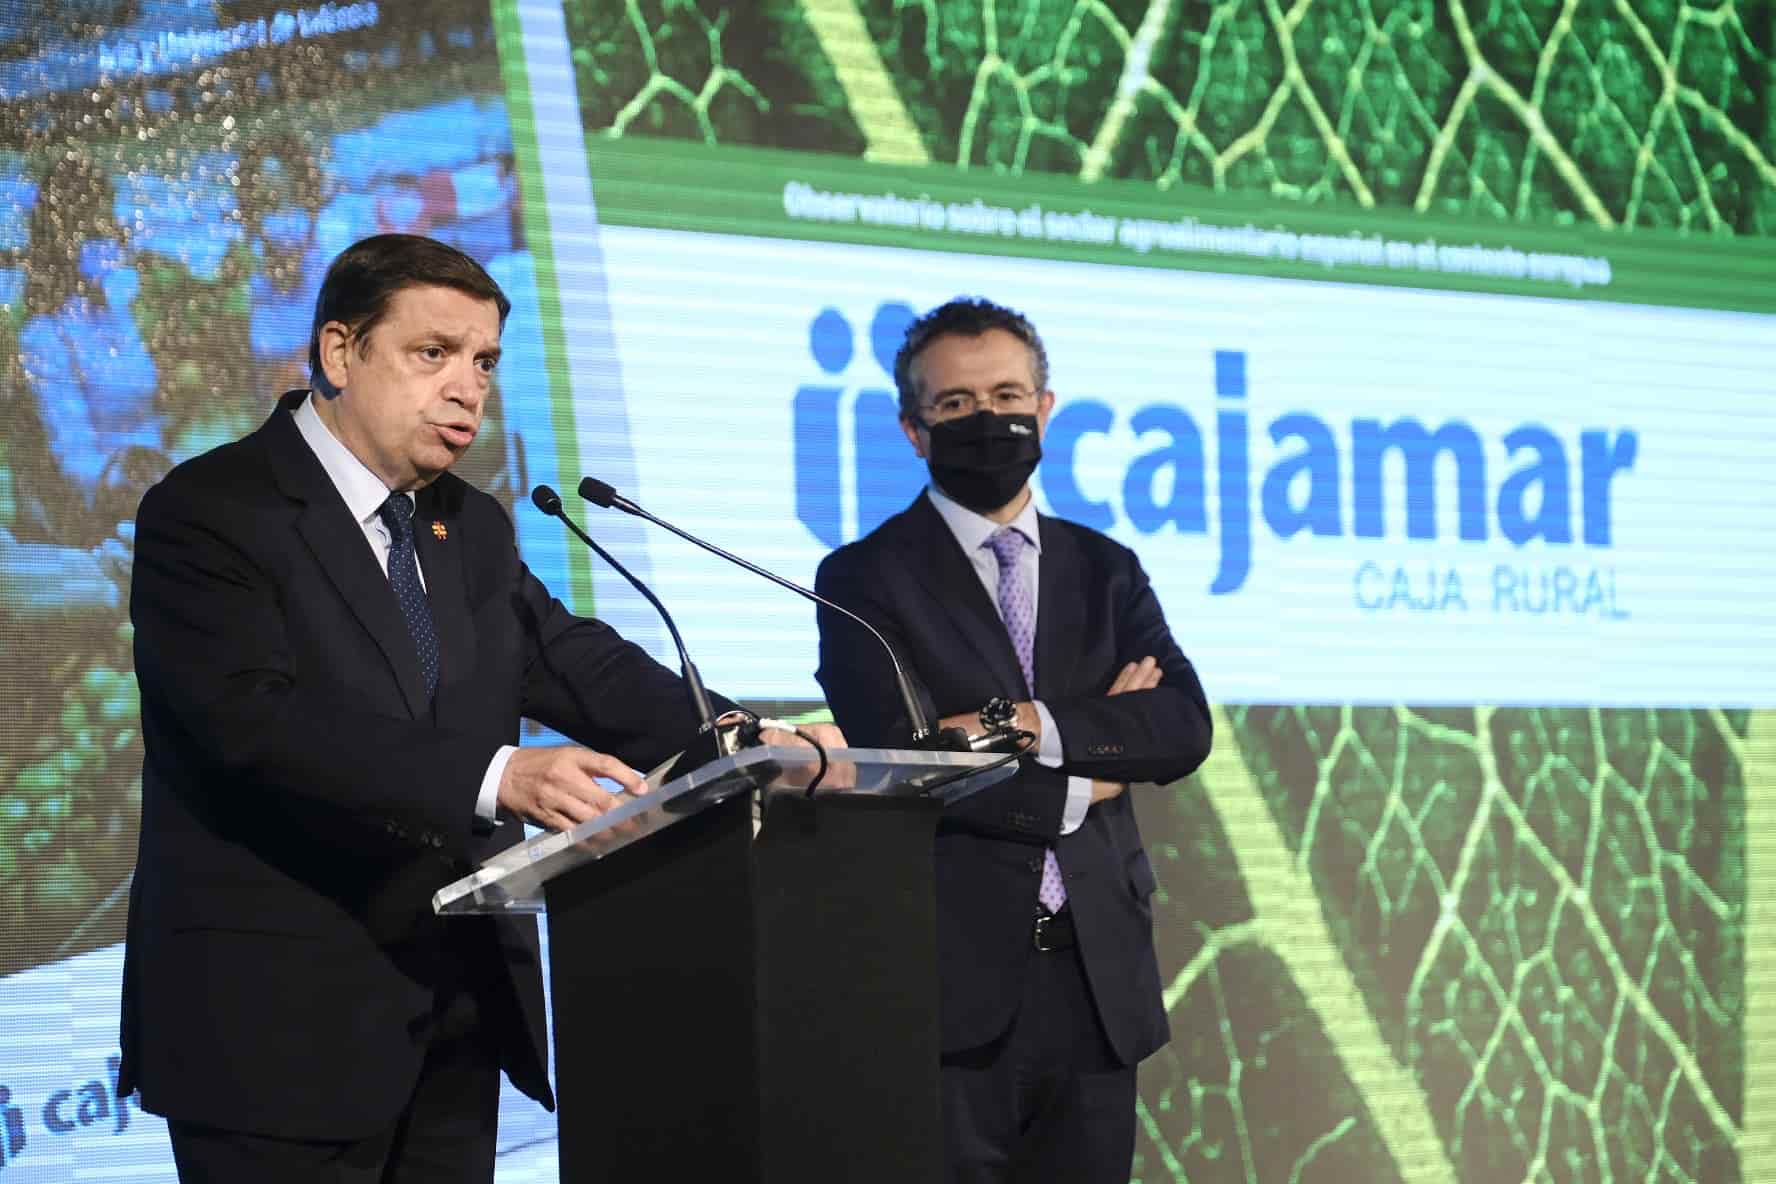 Foto donde se puede ver al presidente de Cajamar, Eduardo Baamonde, en un acto clausurado por el ministro de Agricultura, Luis Planas el cual también aparece en la foto